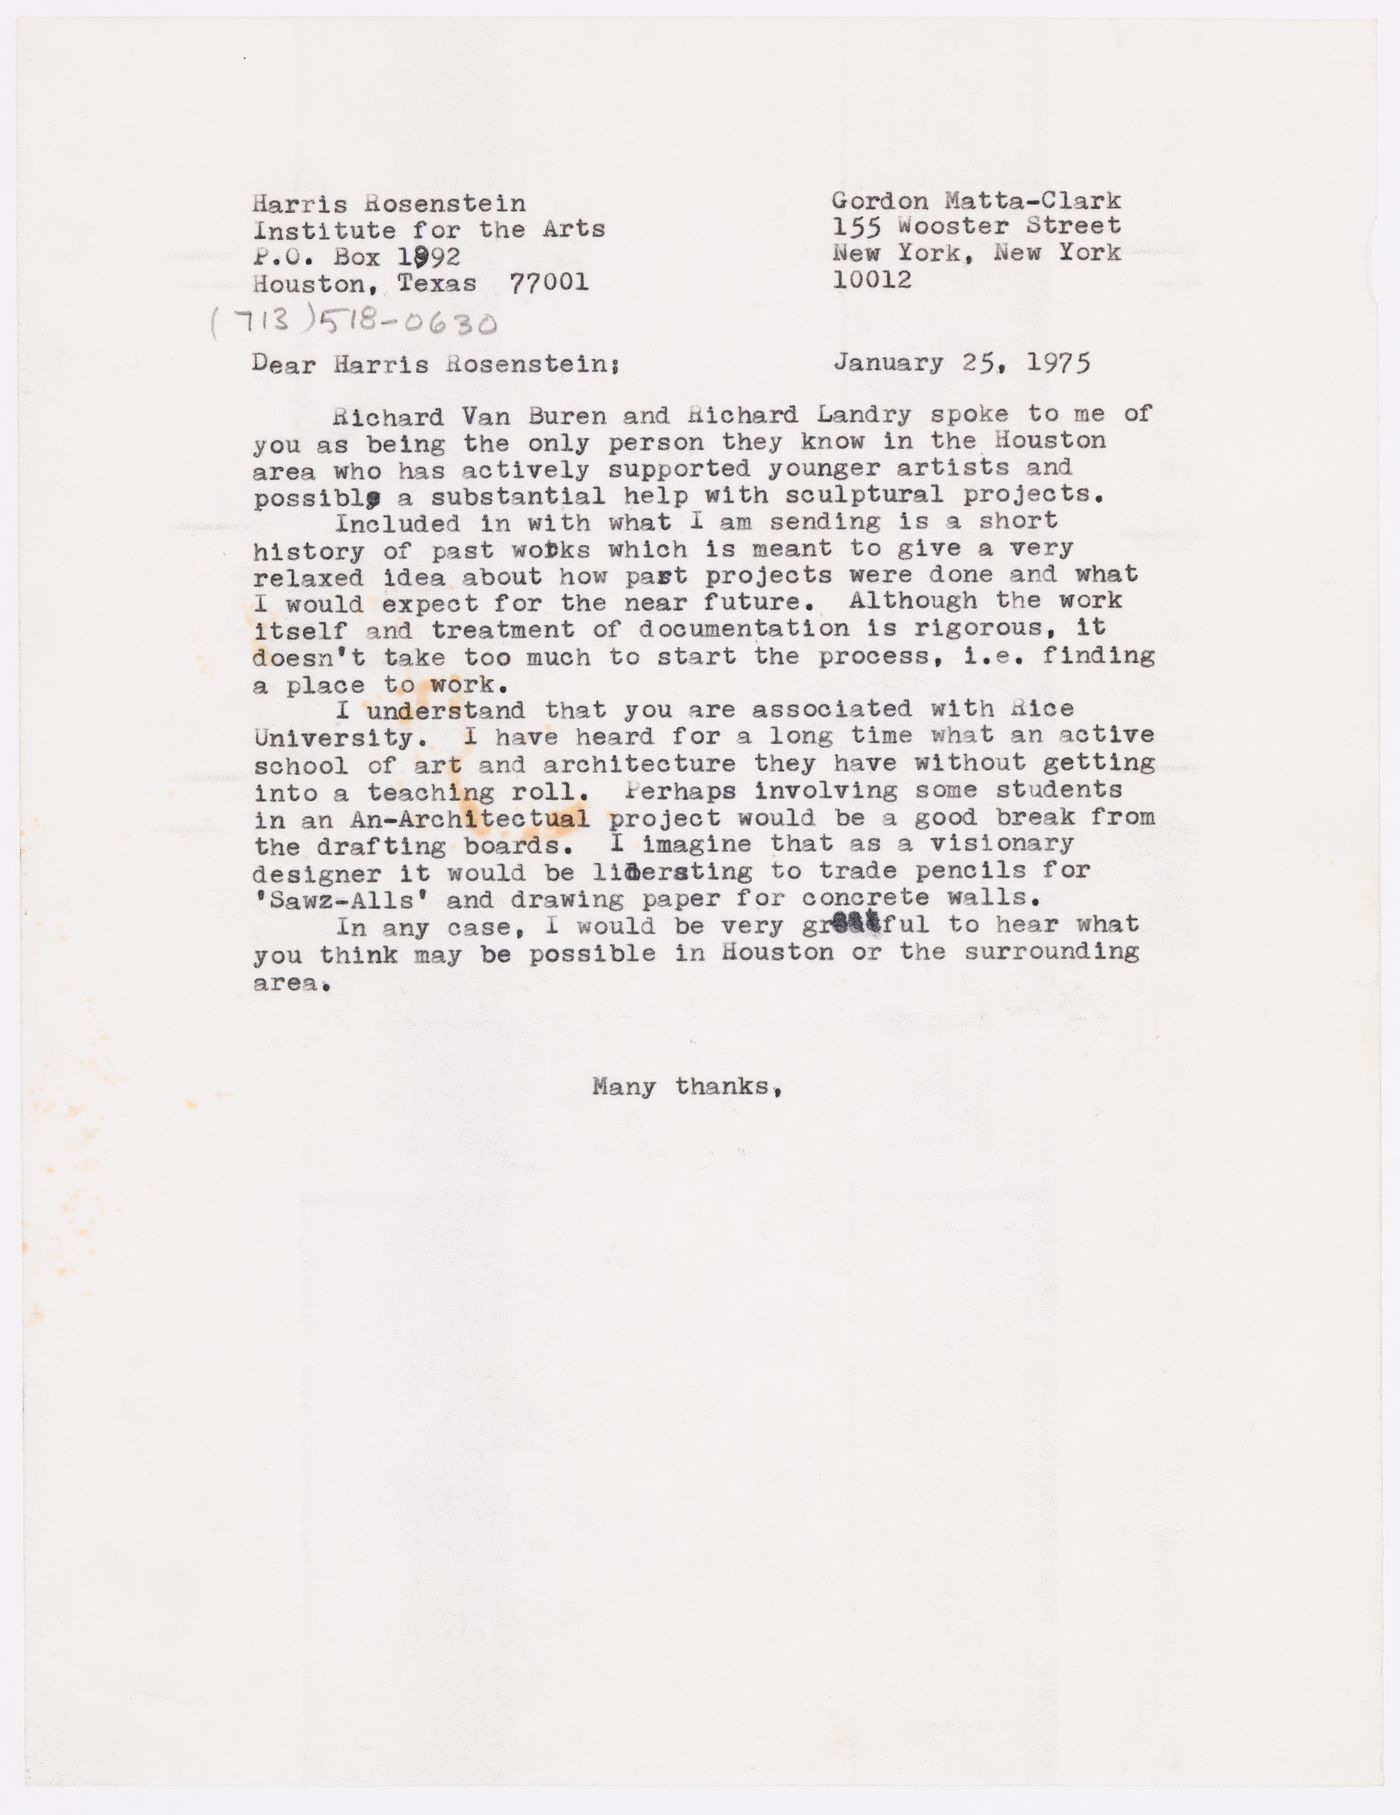 Letter from Gordon Matta-Clark to Harris Rosenstein